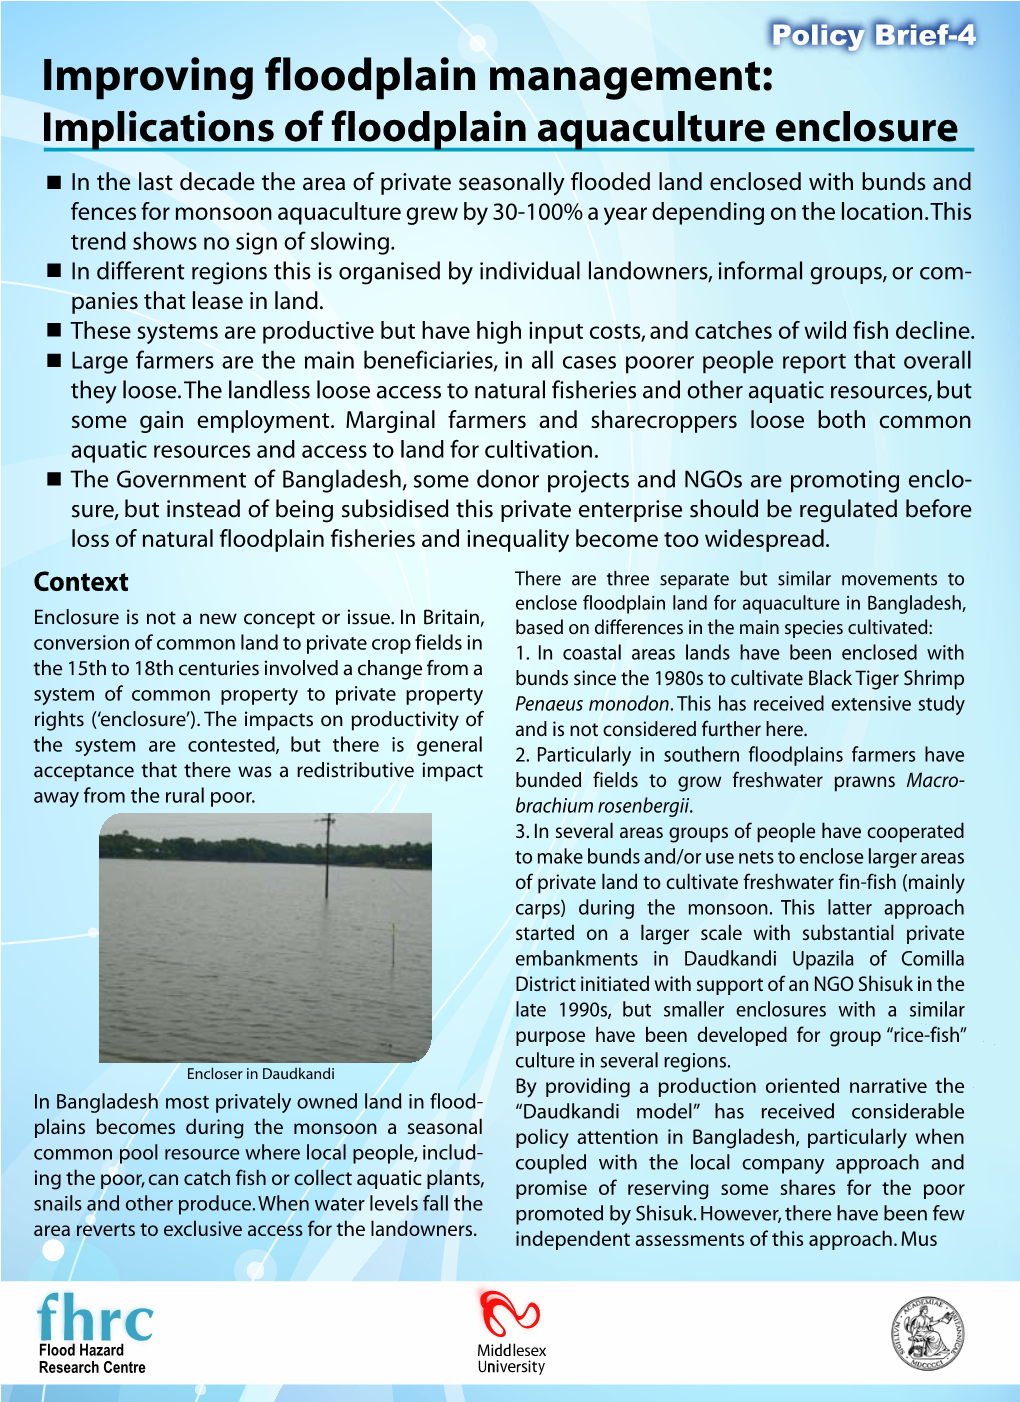 Implications of Floodplain Aquaculture Enclosure